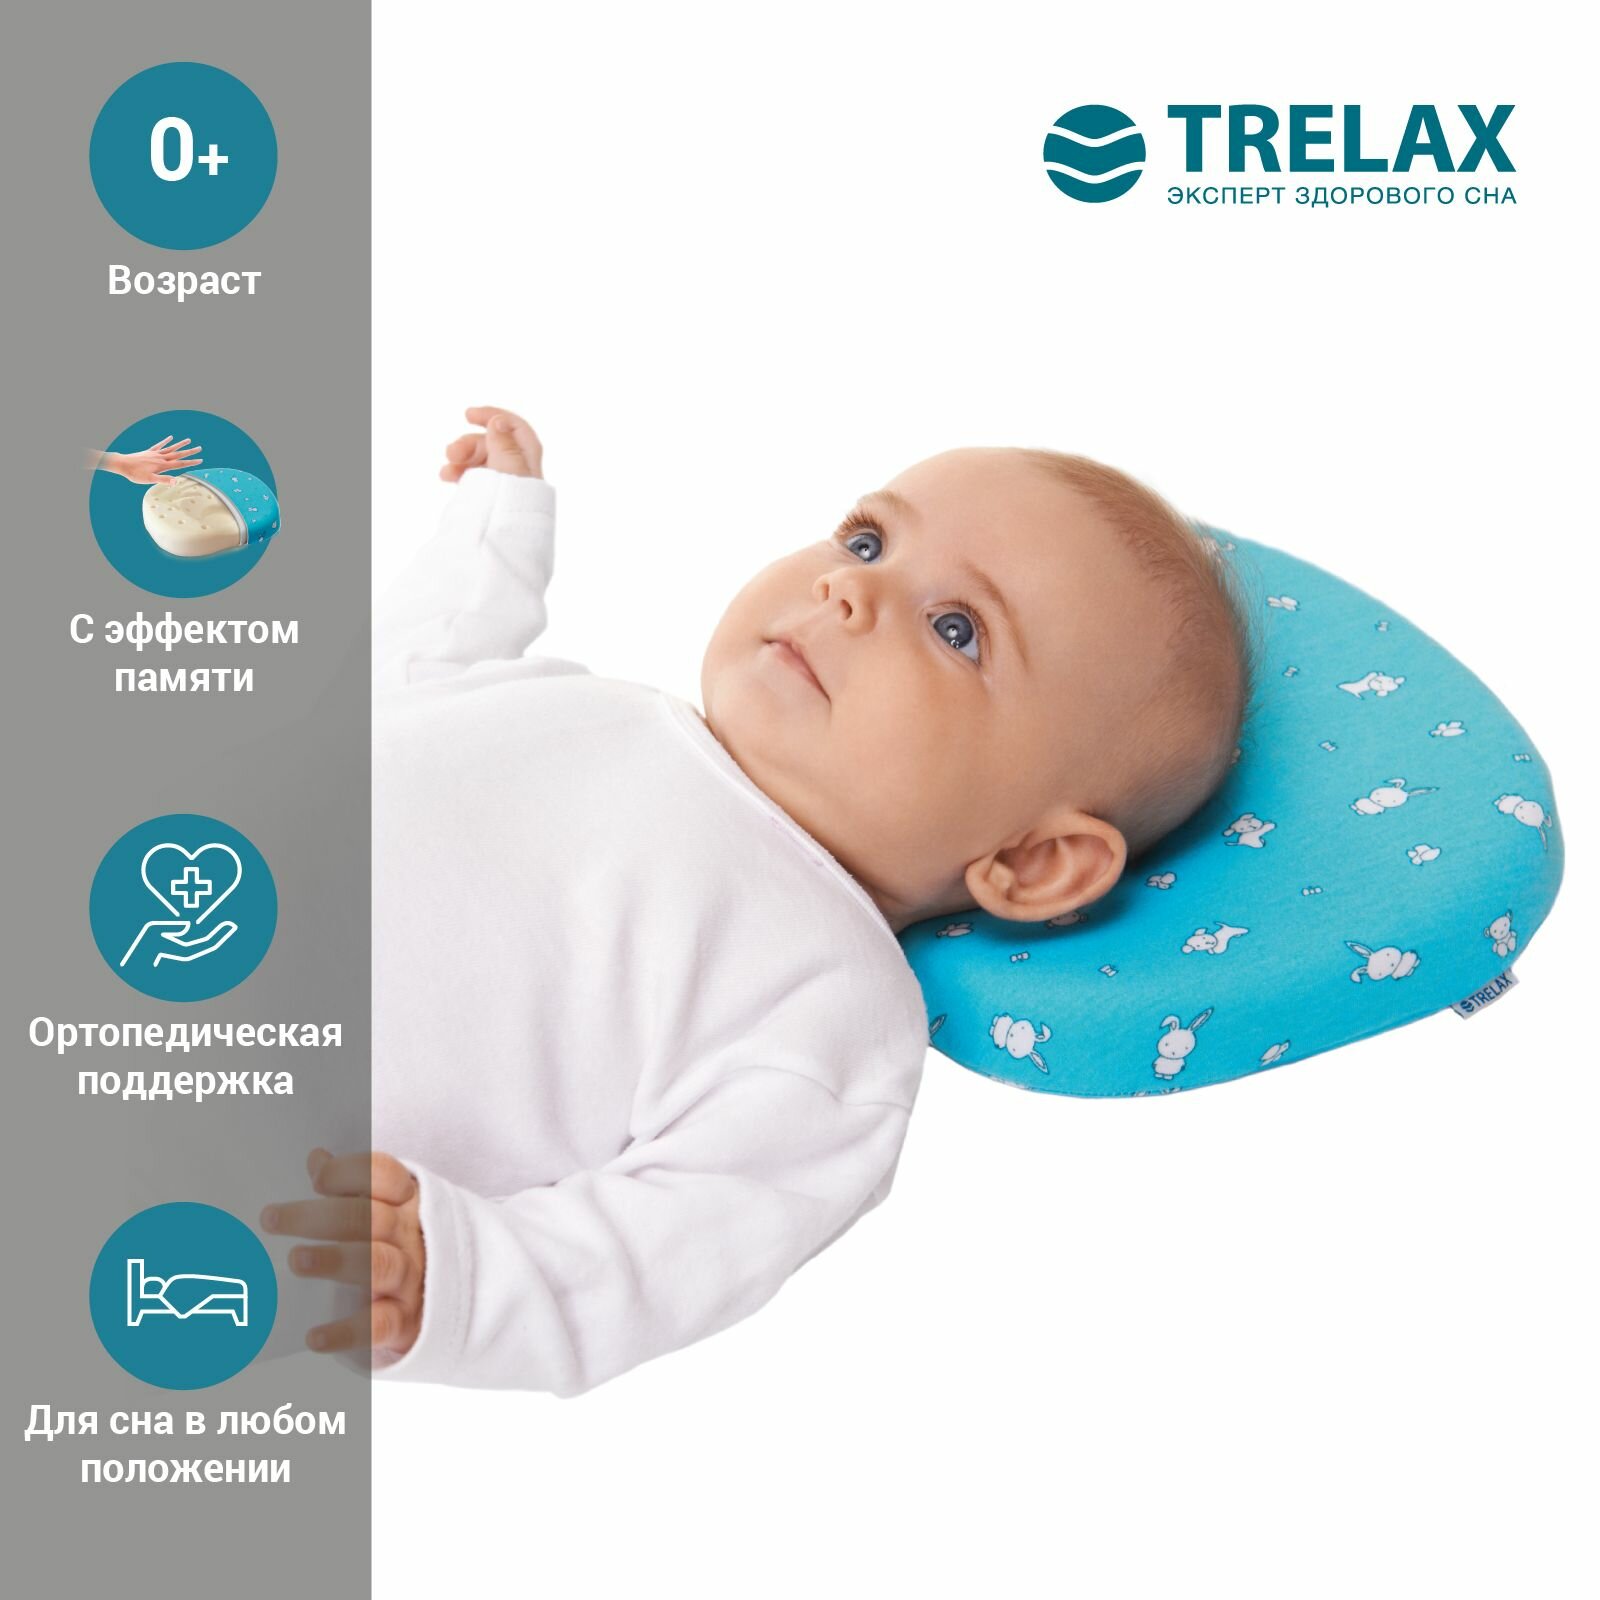 Детская ортопедическая подушка с эффектом памяти под голову для детей от 1 до 18 мес. TRELAX MIMI, арт. П27 трелакс